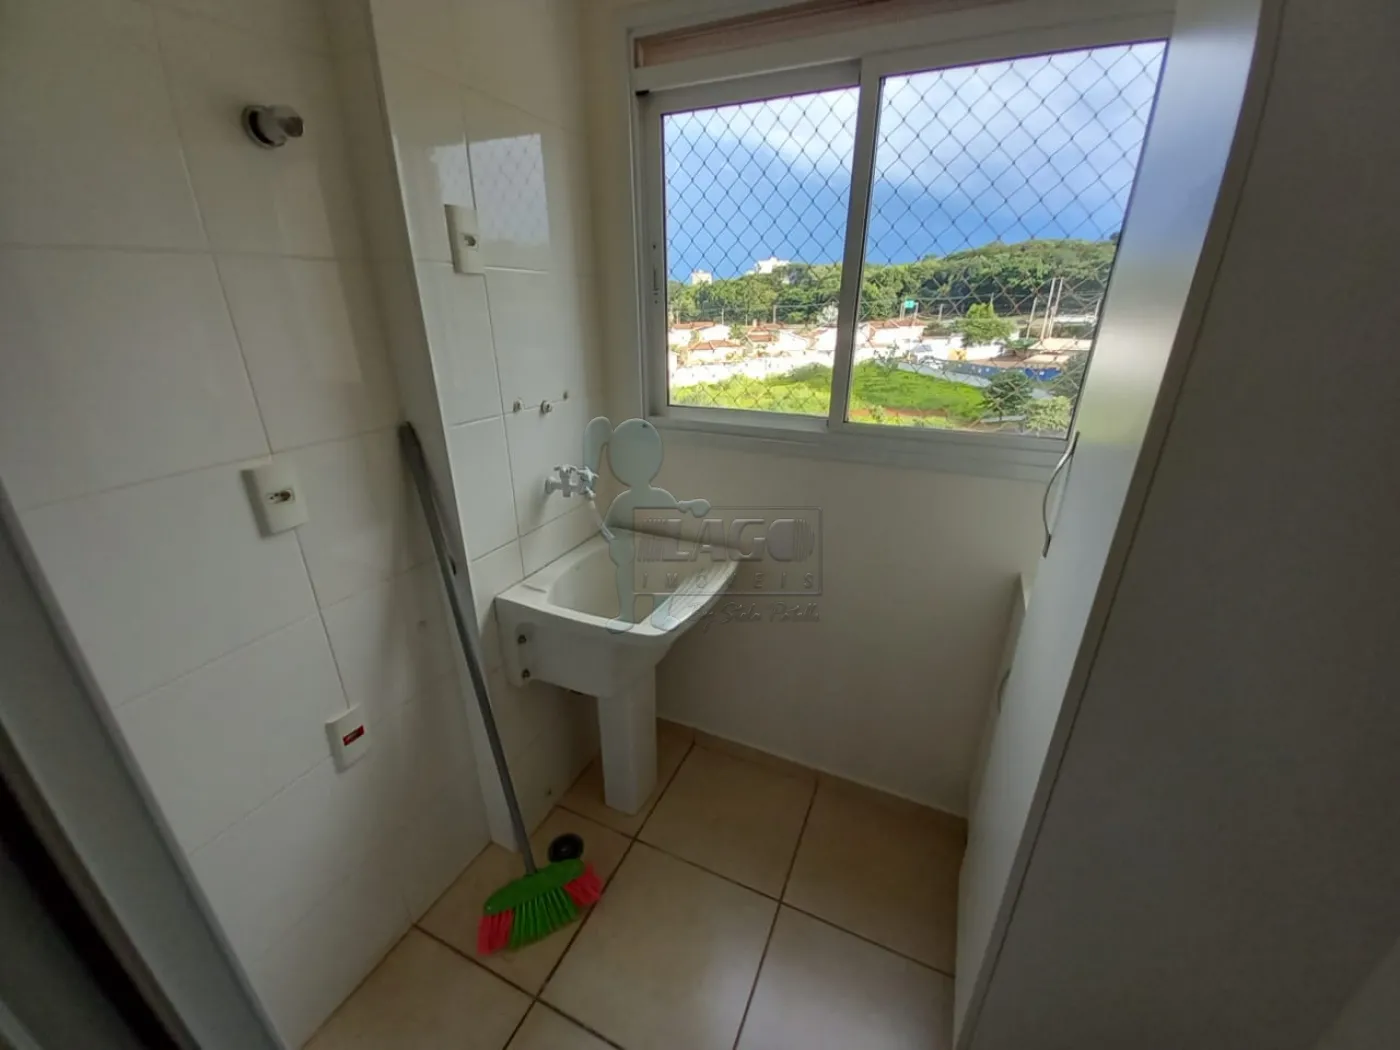 Alugar Apartamentos / Padrão em Ribeirão Preto R$ 3.600,00 - Foto 11